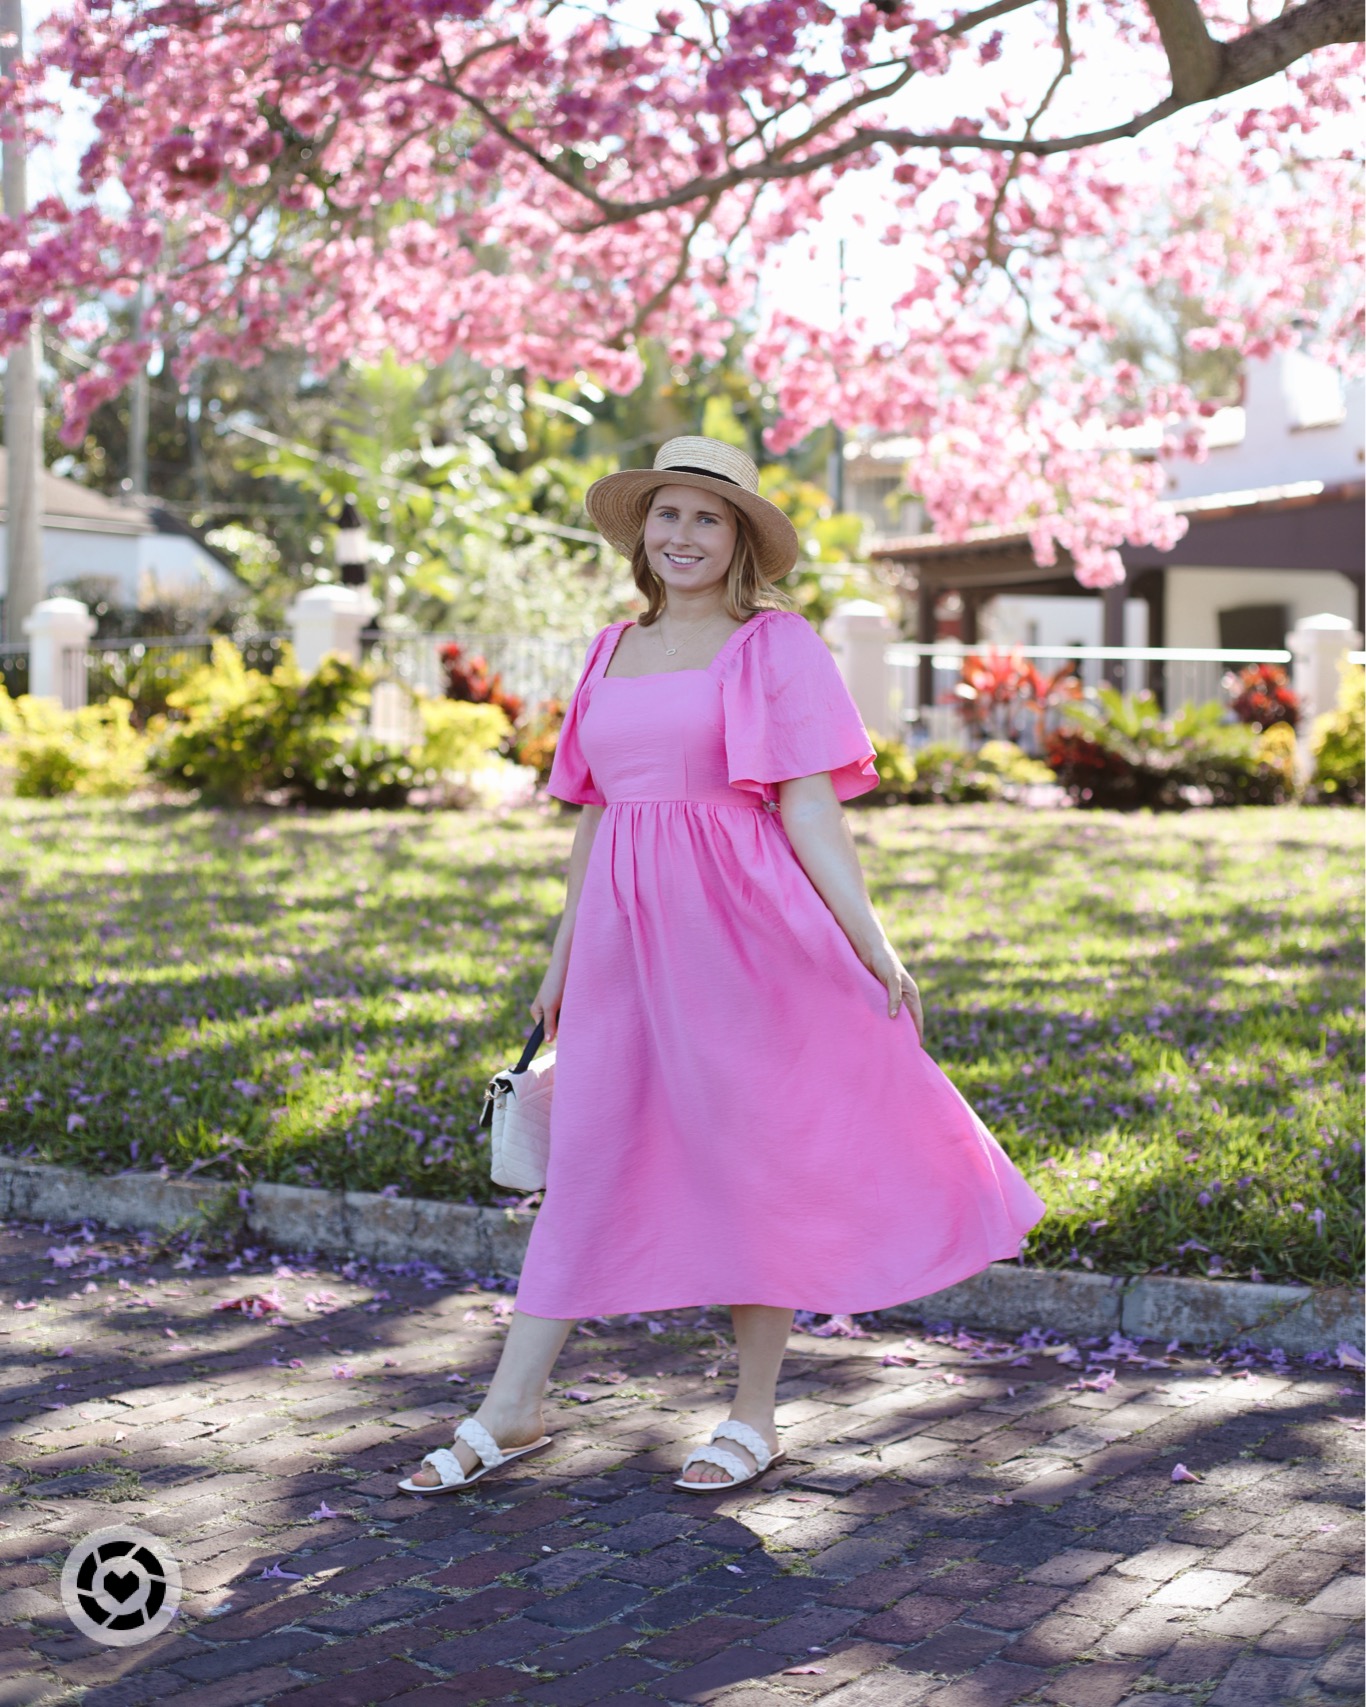 Target KnoxRose pink dress